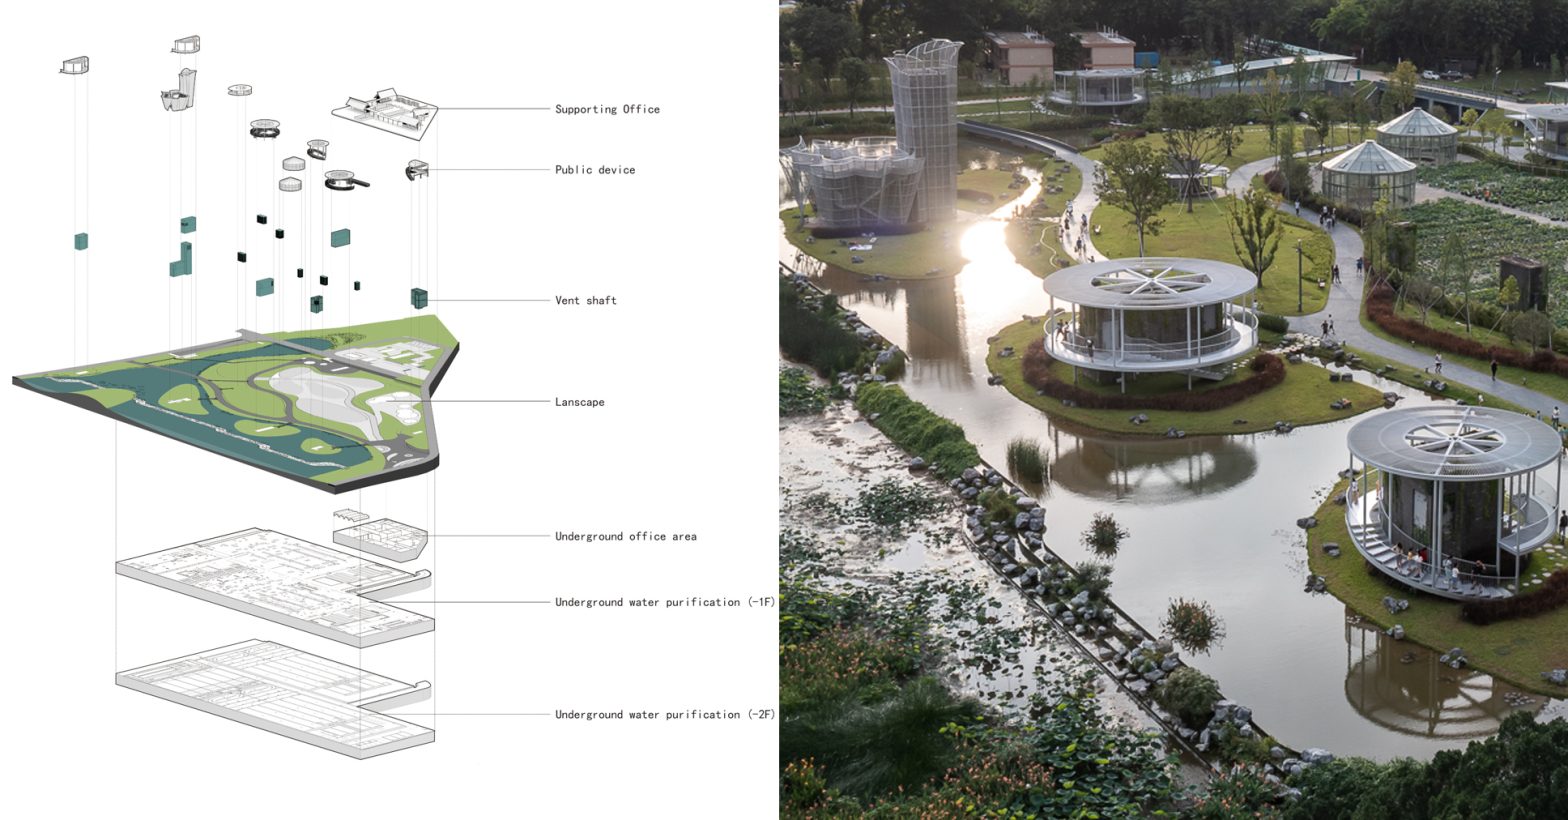 ساخت پل ها: معماران چگونه قوانین معماری تاسیسات تصفیه آب را اصلاح می کنند